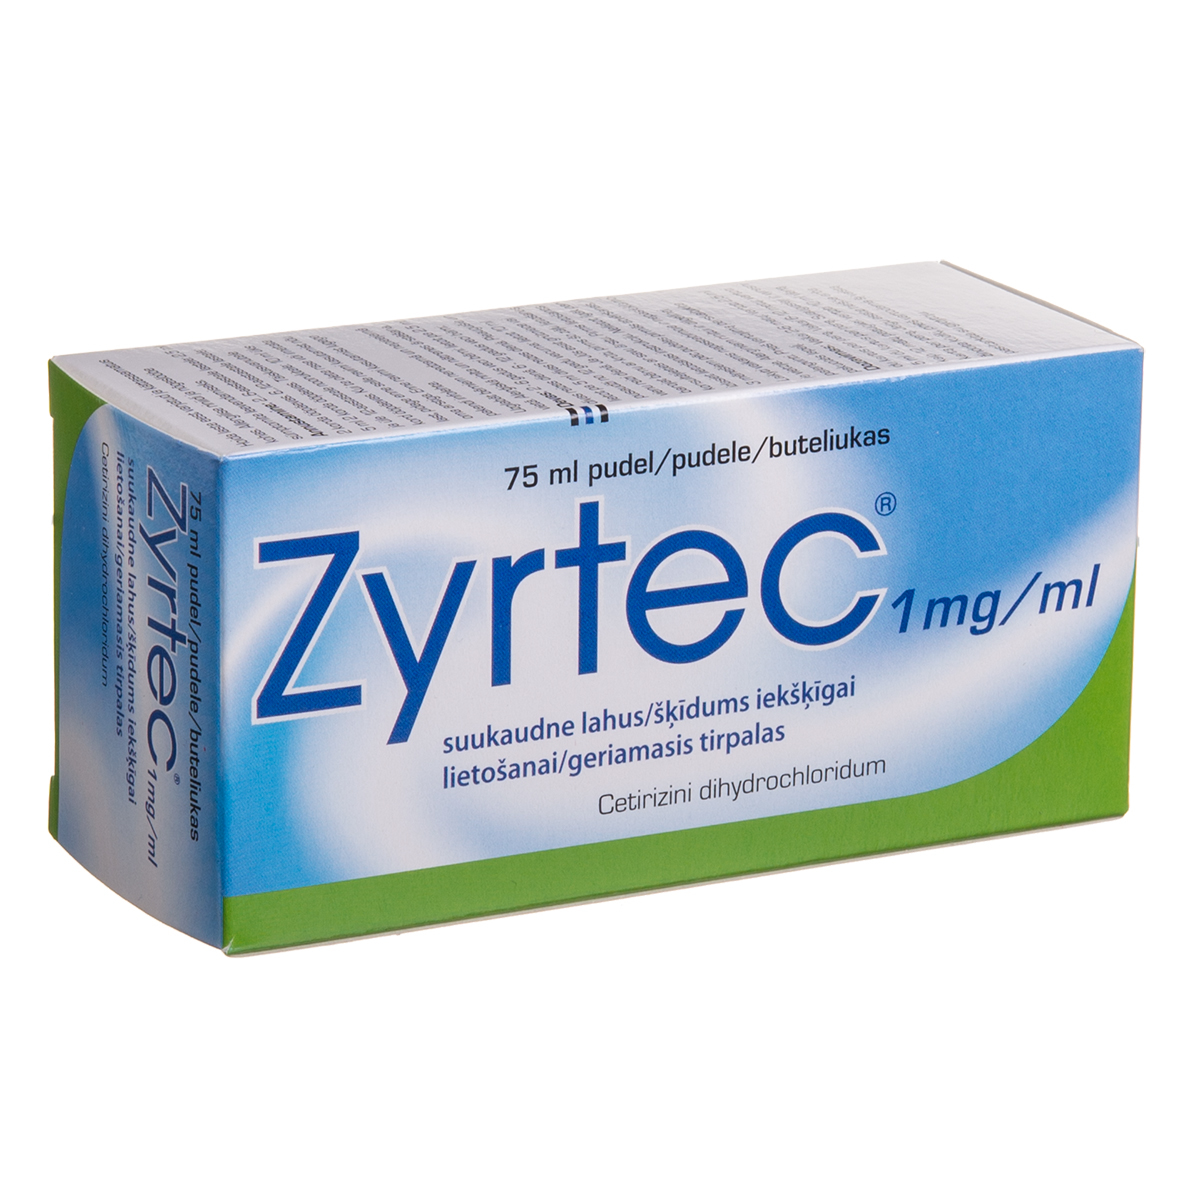 ZYRTEC, 1 mg/ml, geriamasis tirpalas, 75 ml